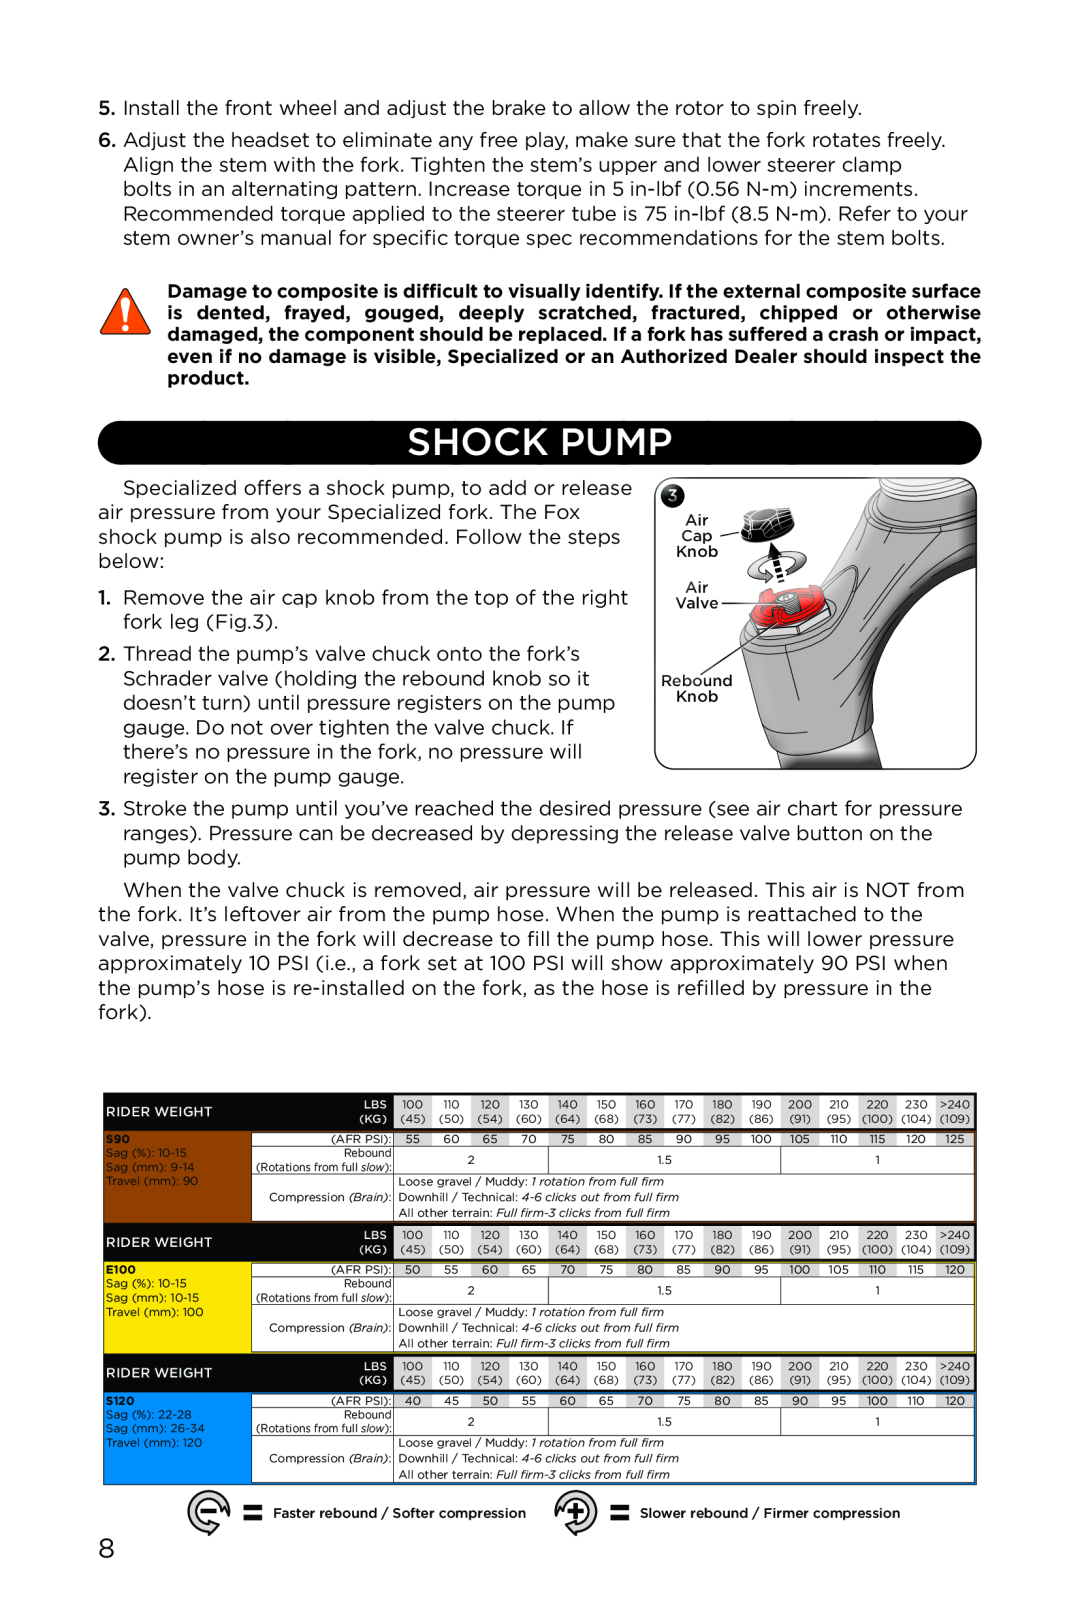 Specialized AFR S90, AFR E100, AFR S120 manual Shock Pump 